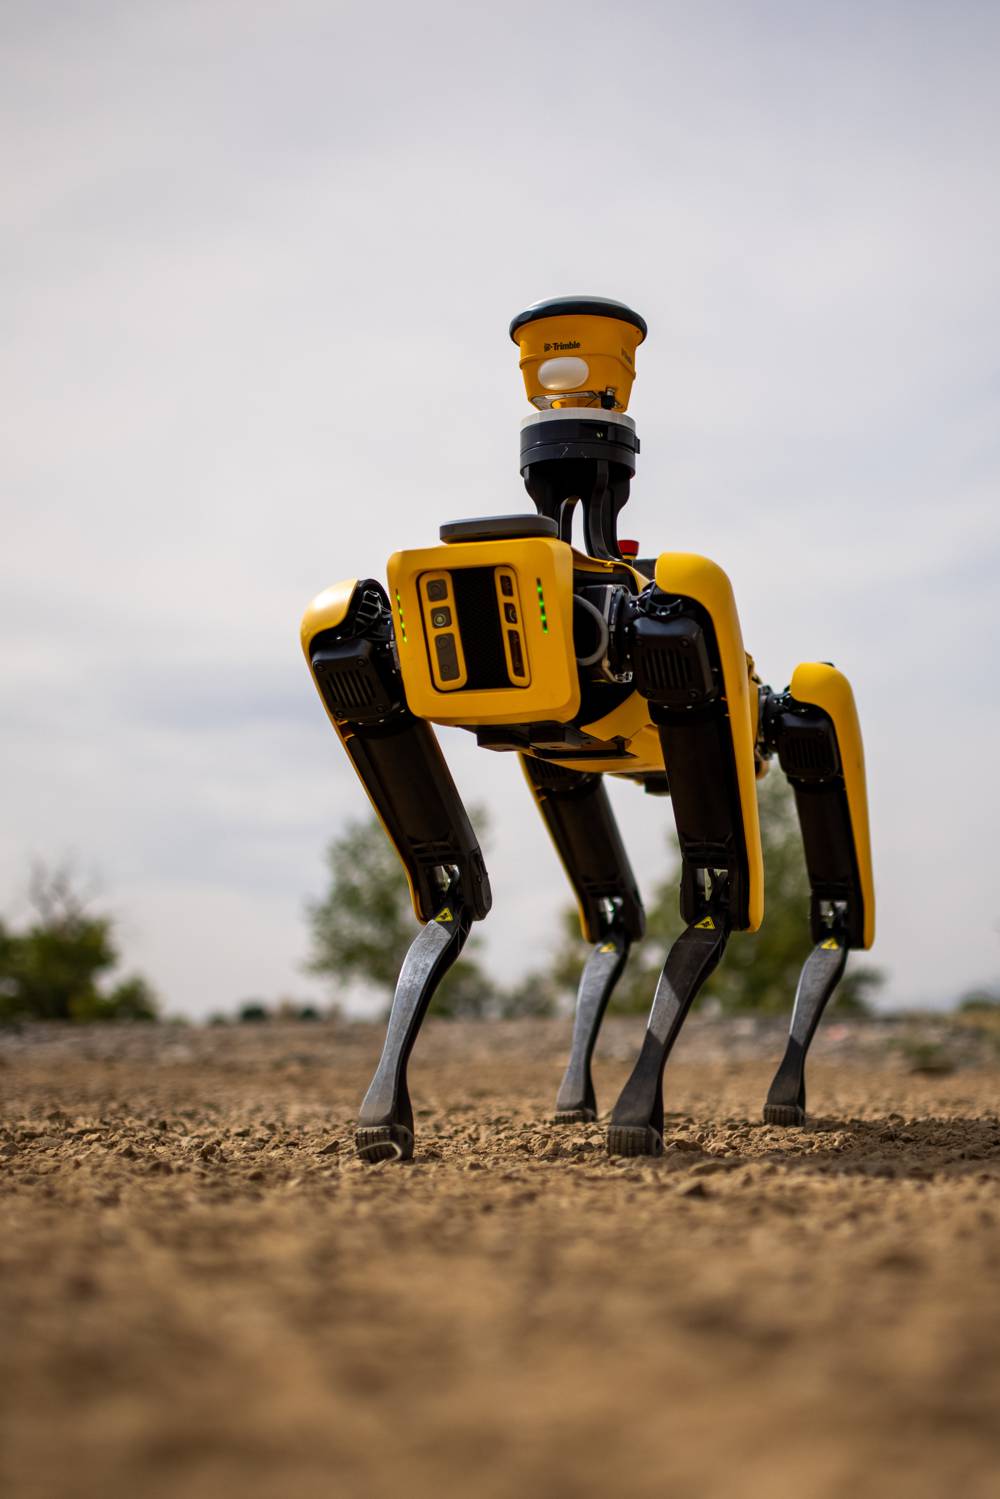 Trimble and Boston Dynamics partner up for Autonomous Robots in Construction